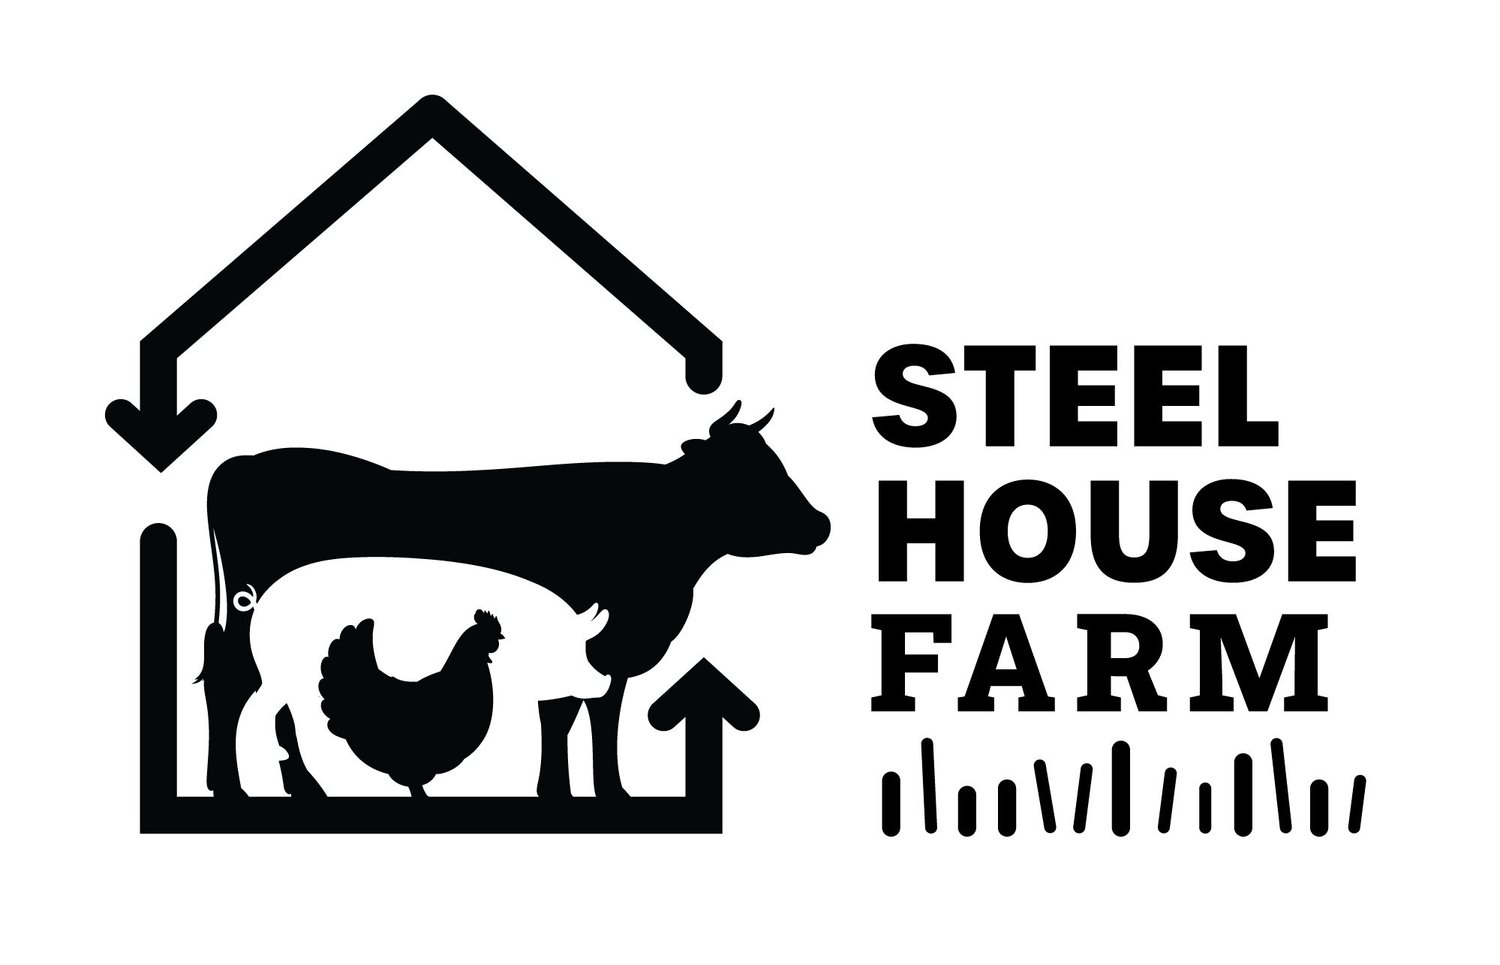 STEEL HOUSE FARM